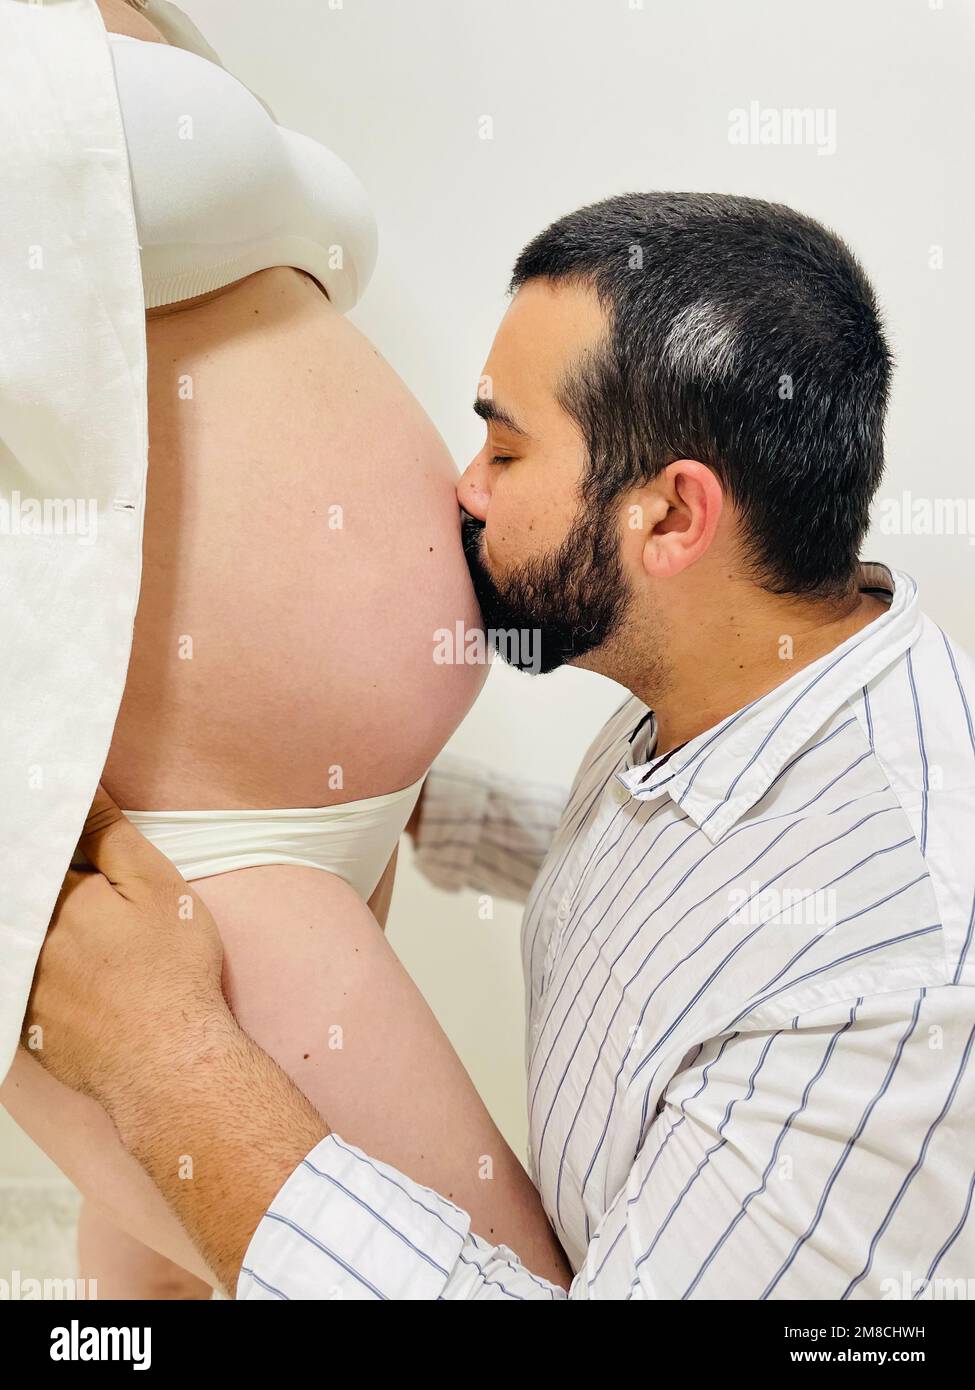 Besando el vientre de una mujer embarazada Foto de stock